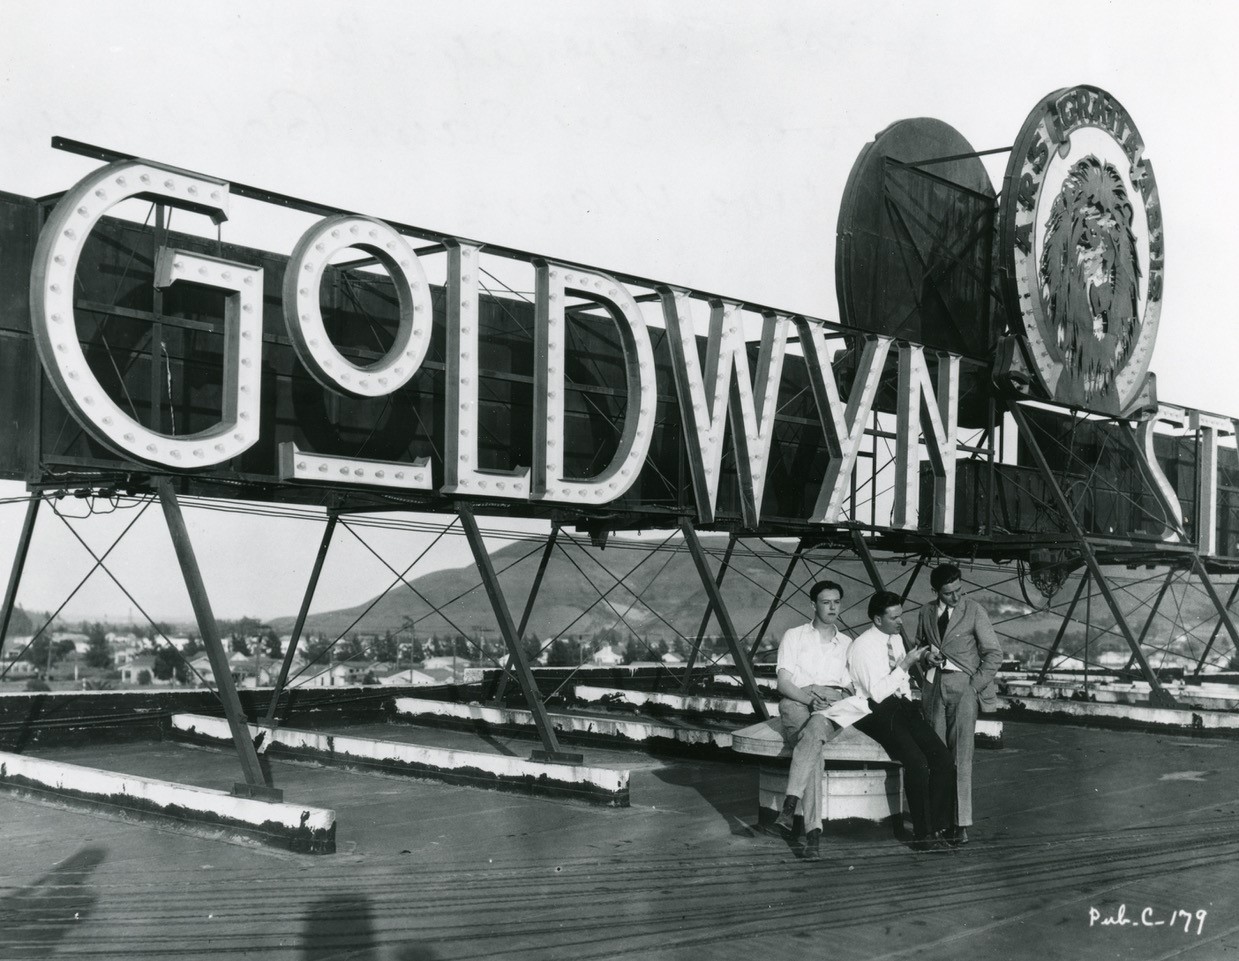 Duże logo/neon wytwórni filmowej Goldwyn